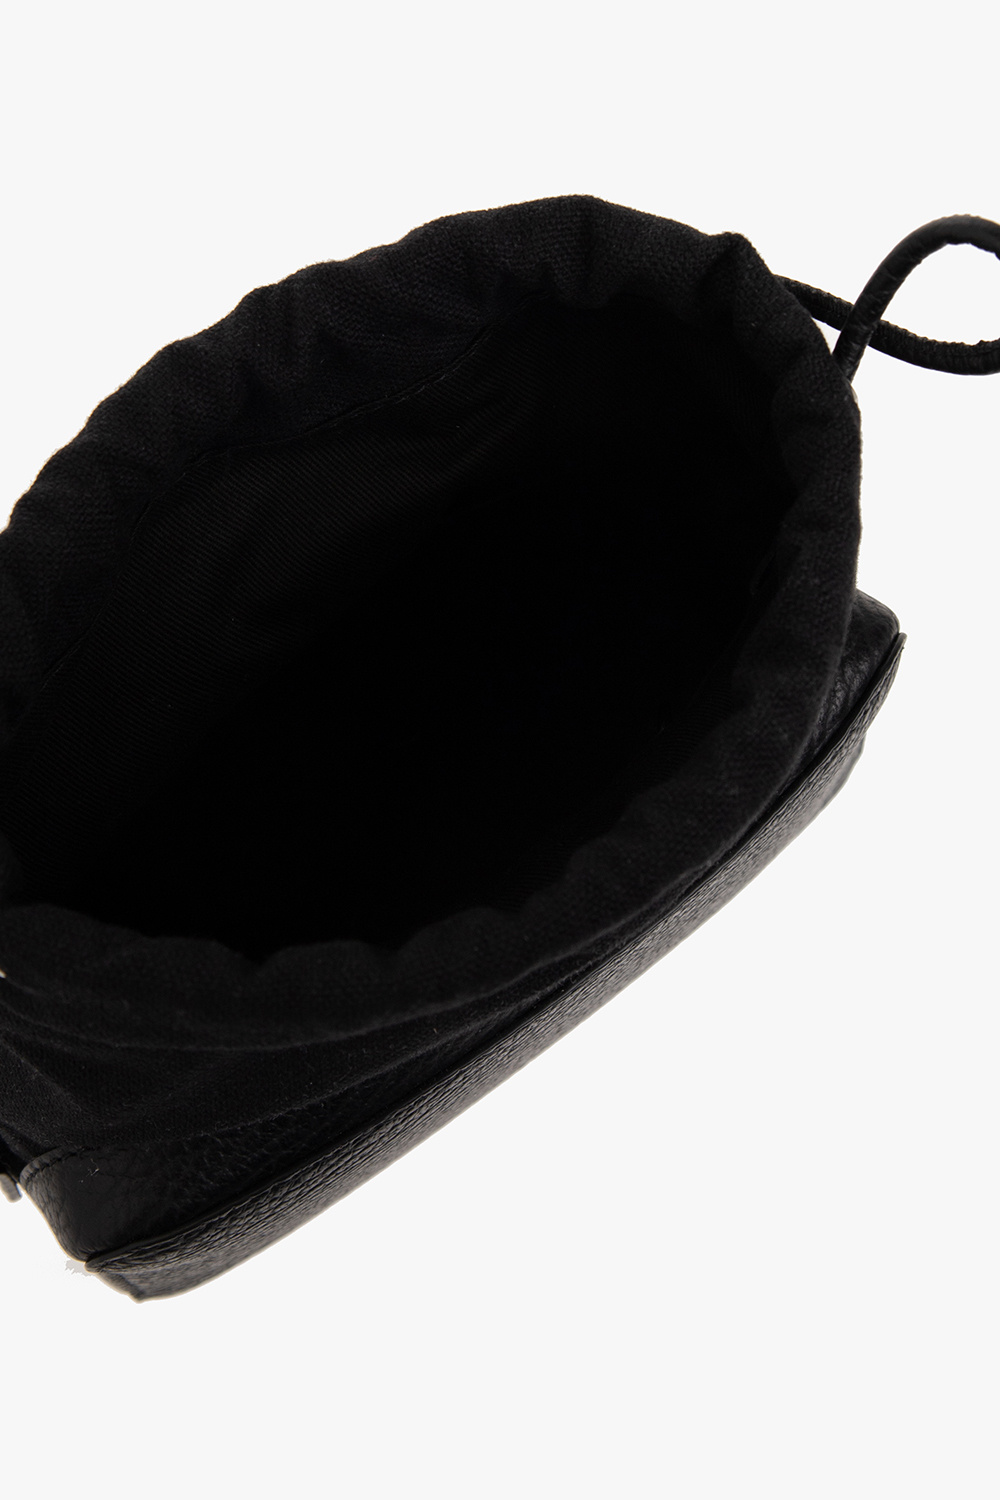 Maison Margiela '5Gucci shoulder bag in black monogram leather